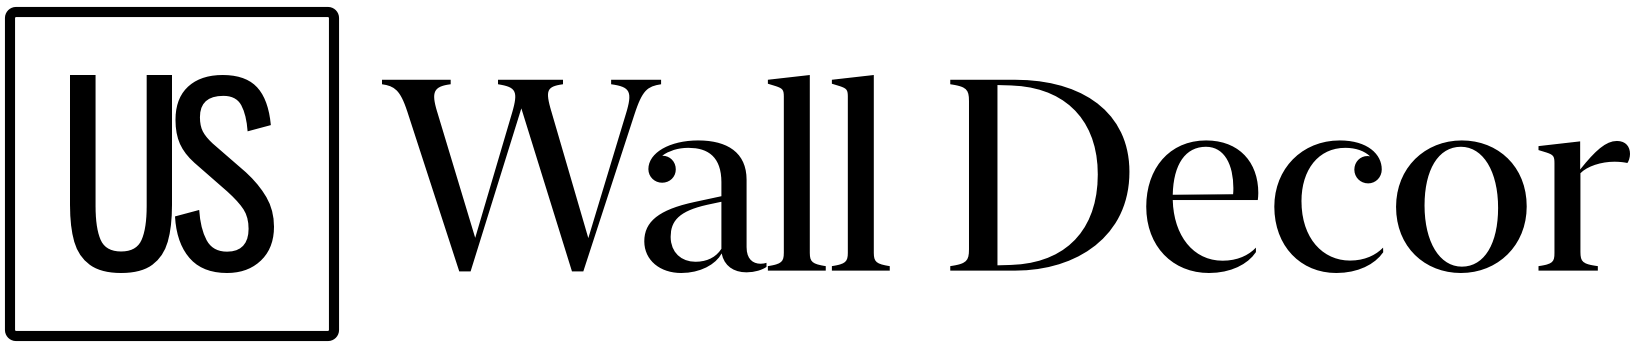 US Wall Decor logo